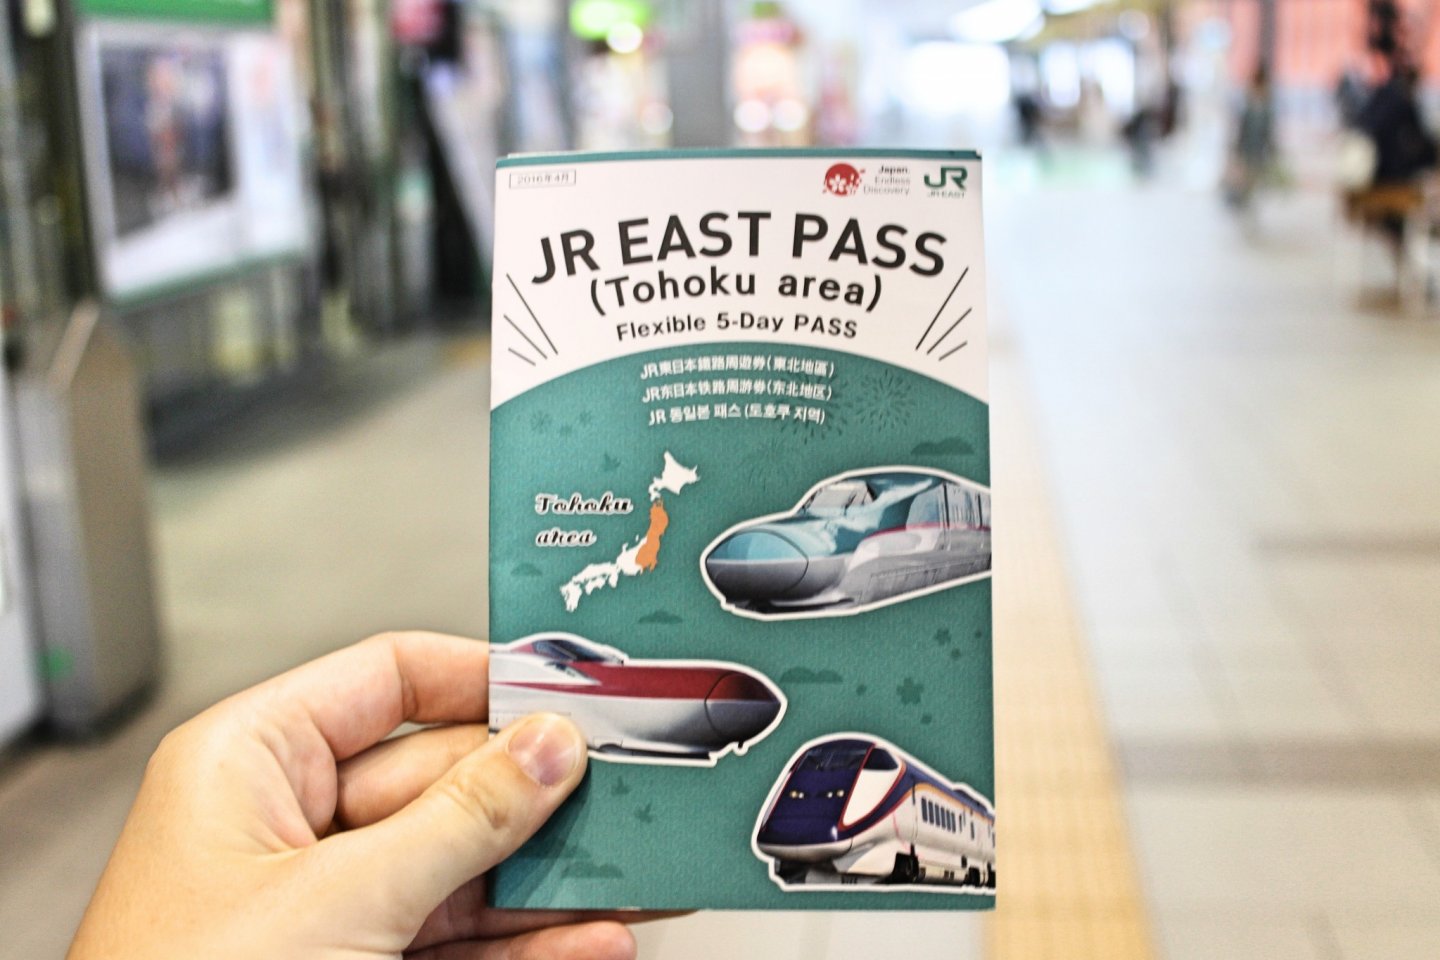 JR East Pass for Tohoku area